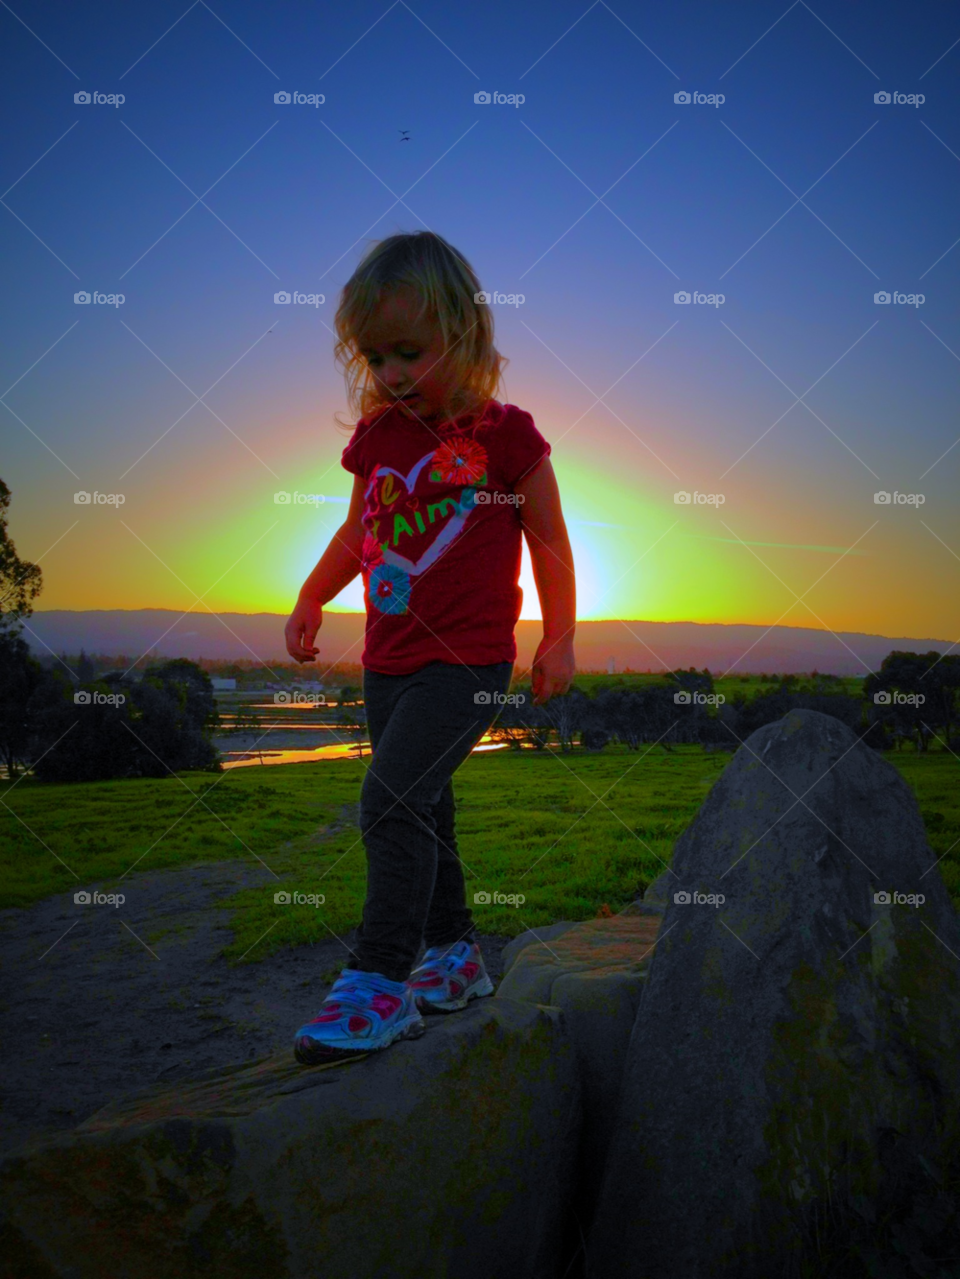 play sunset child fun by darkmatter